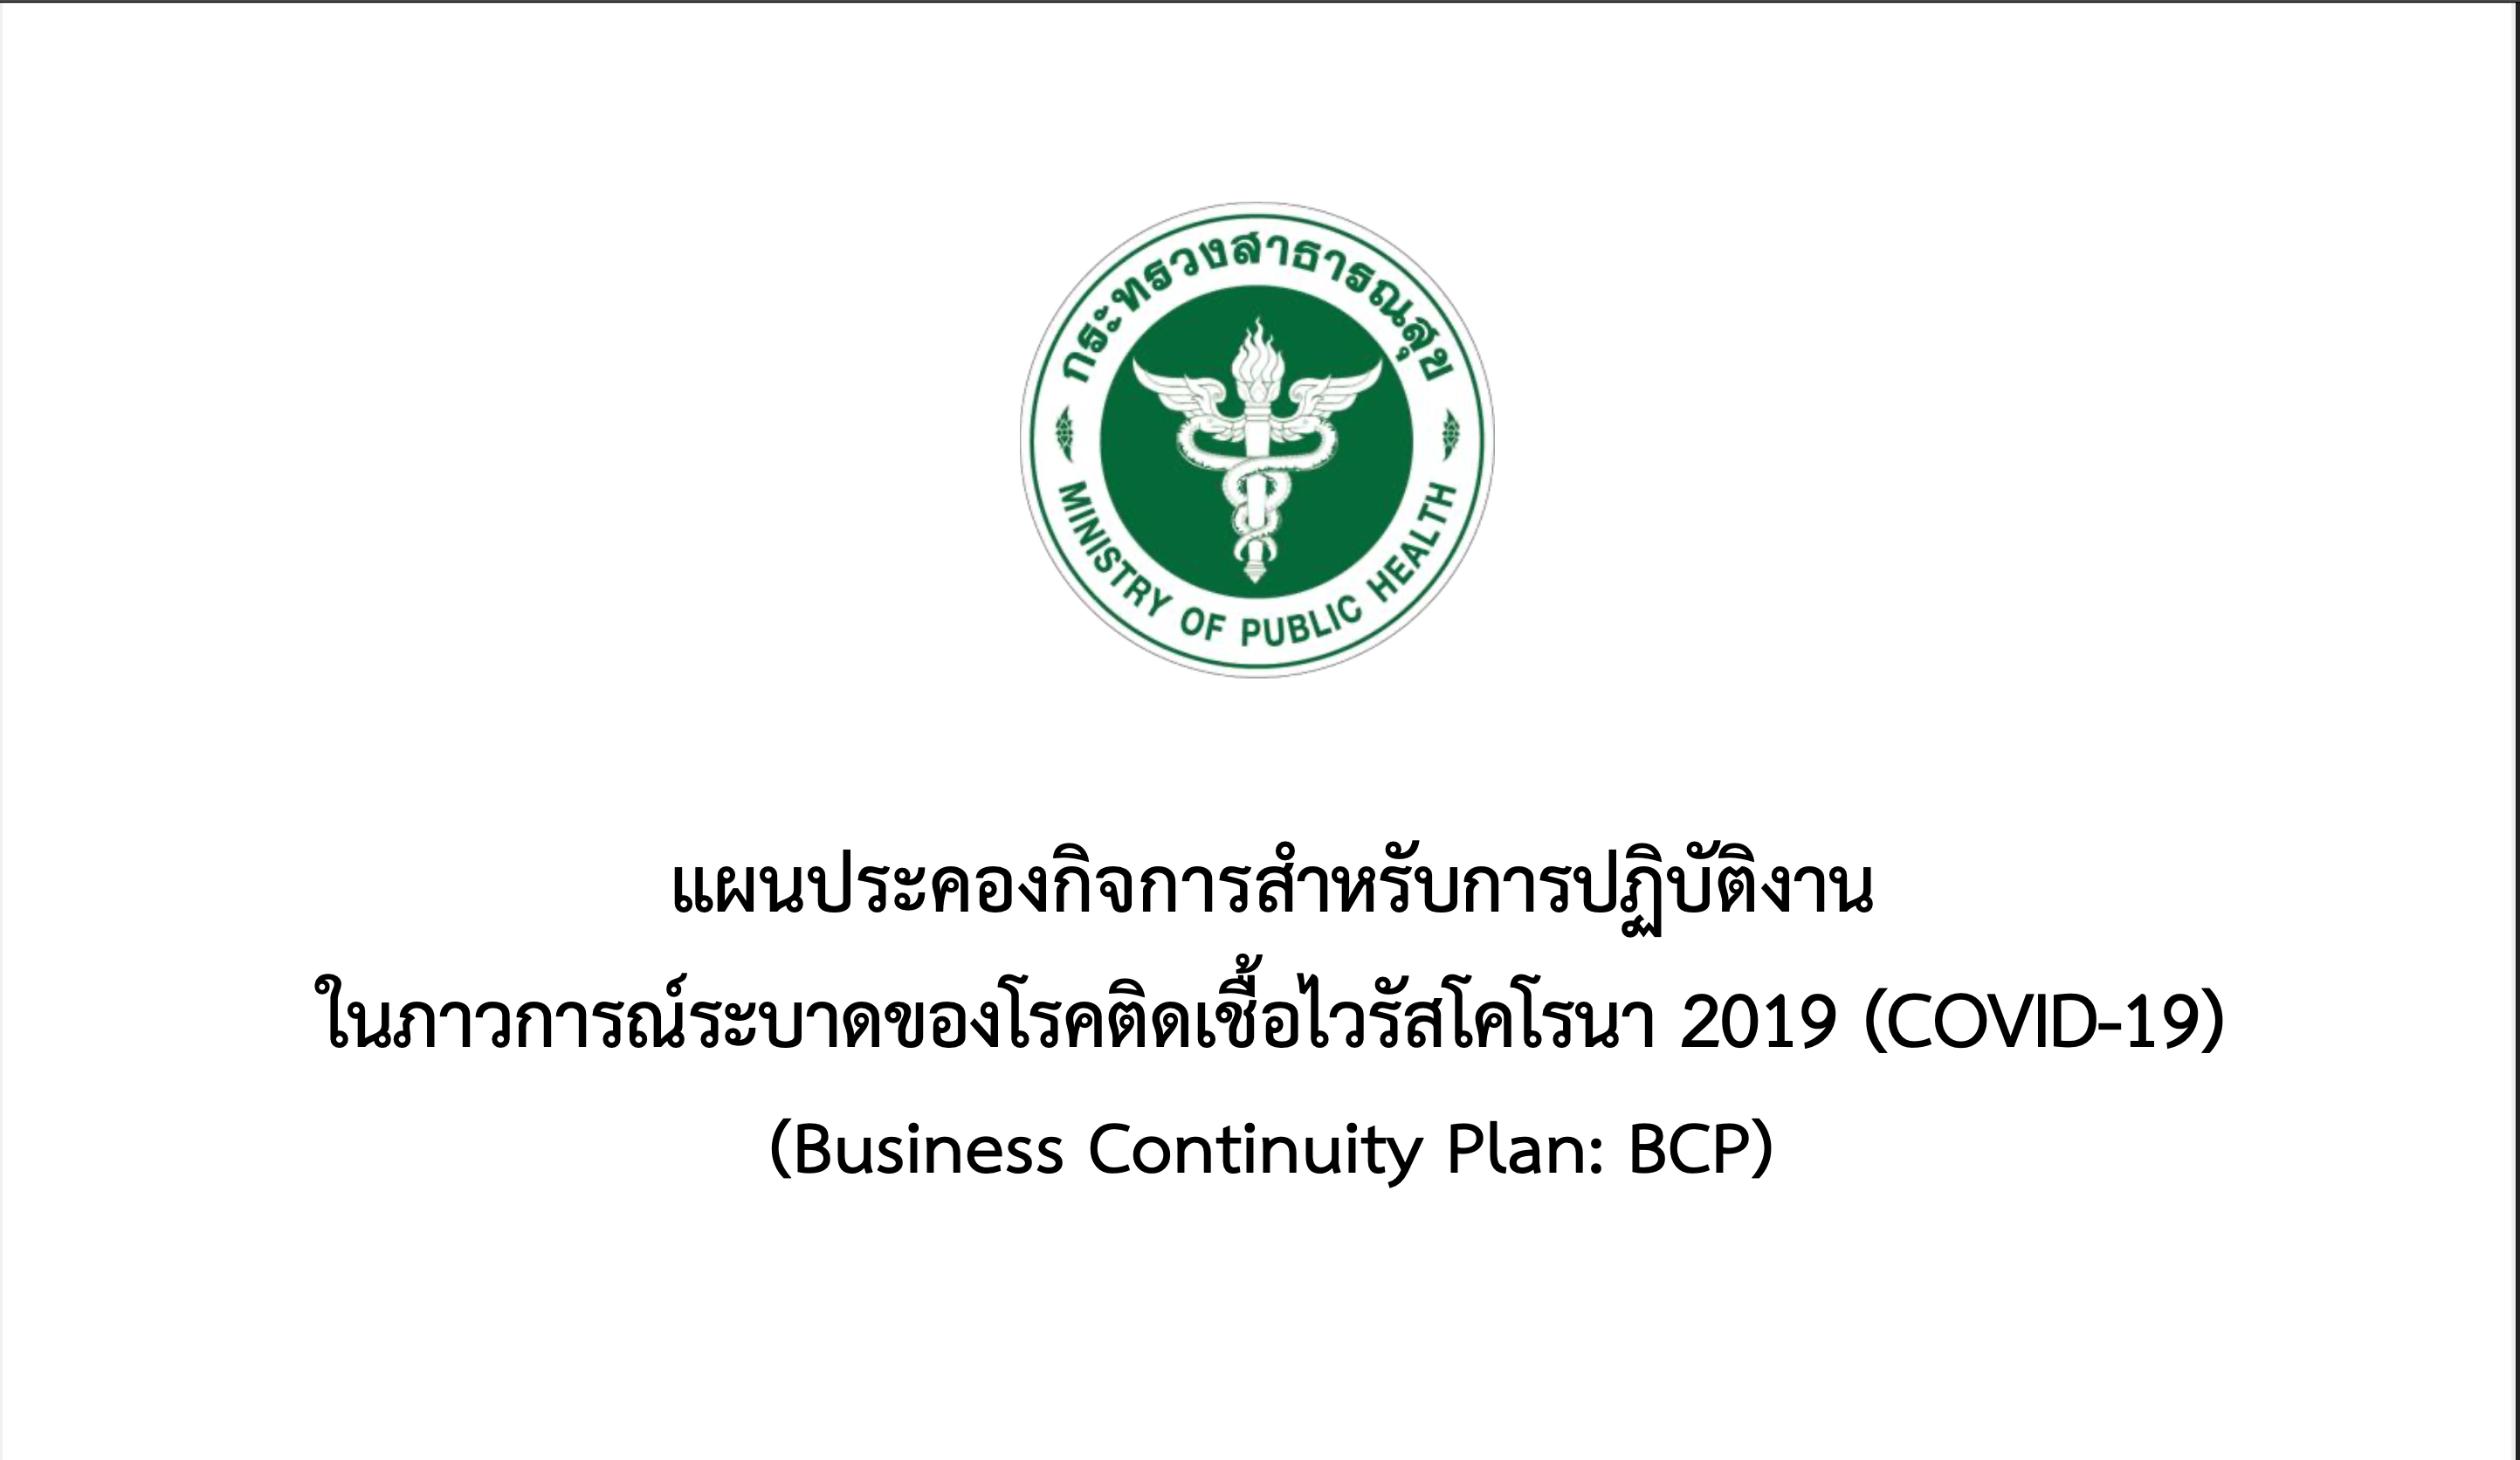 แผนประคองกิจการสําหรับการปฏิบัติงาน ในภาวการณ์ระบาดของโรคตดิ เชื้อไวรสั โคโรนา 2019 (COVID-19) (Business Continuity Plan: BCP)